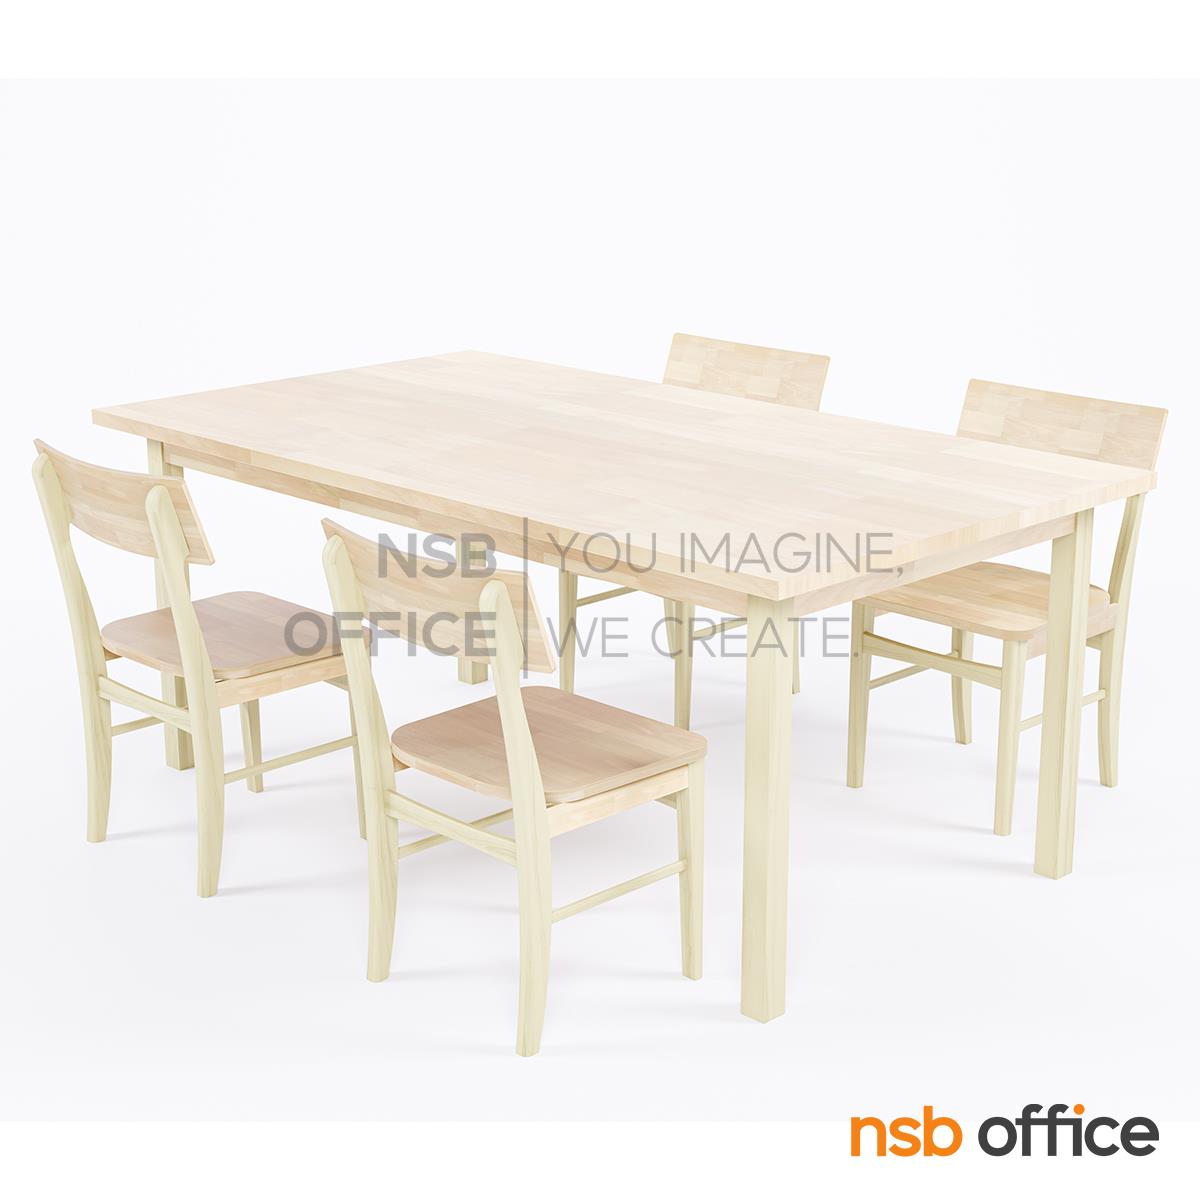 G20A056:ชุดโต๊ะหน้าไม้ยางพารา 4 ที่นั่ง รุ่น Nilda (นิลดา) ขนาด 180W*100D cm. 